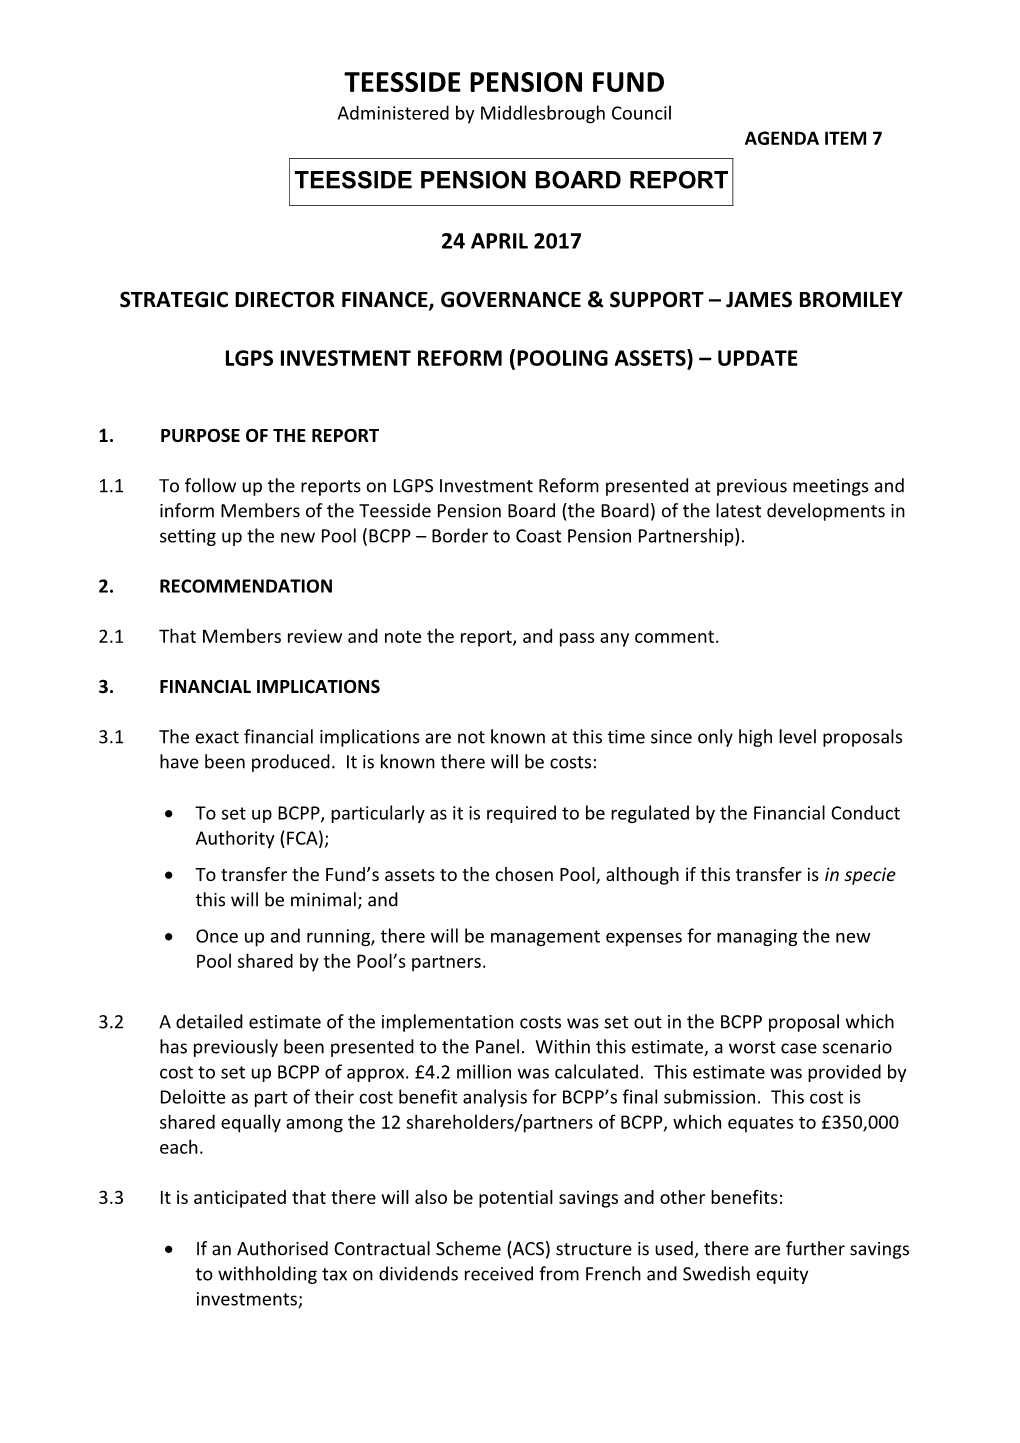 Strategic Director Finance, Governance & Support Jamesbromiley